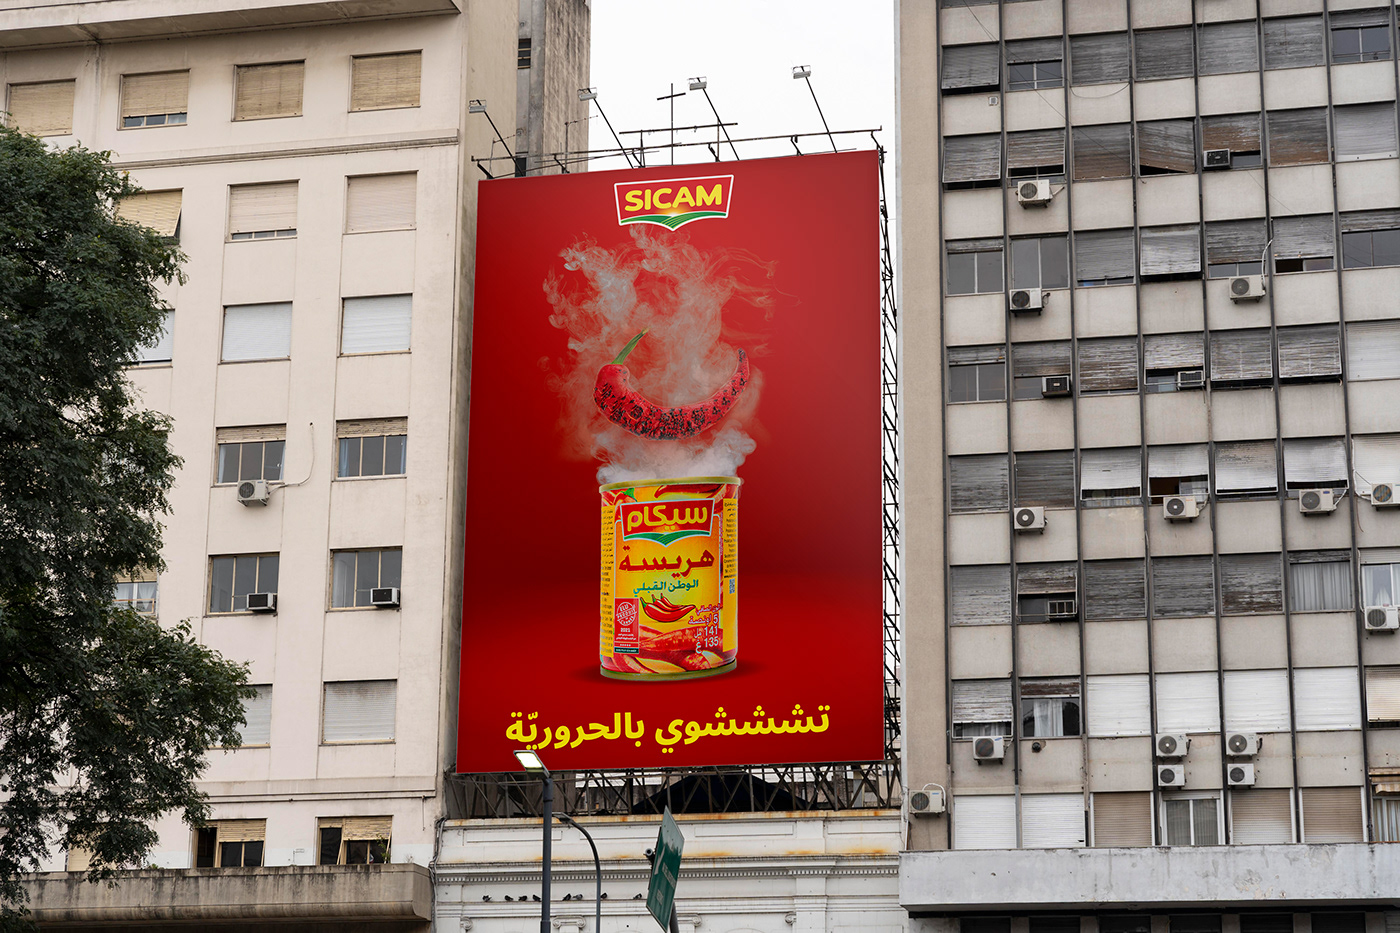 Advertising  affiche banner campagne publicitaire depliant flyer harissa publicité sicam